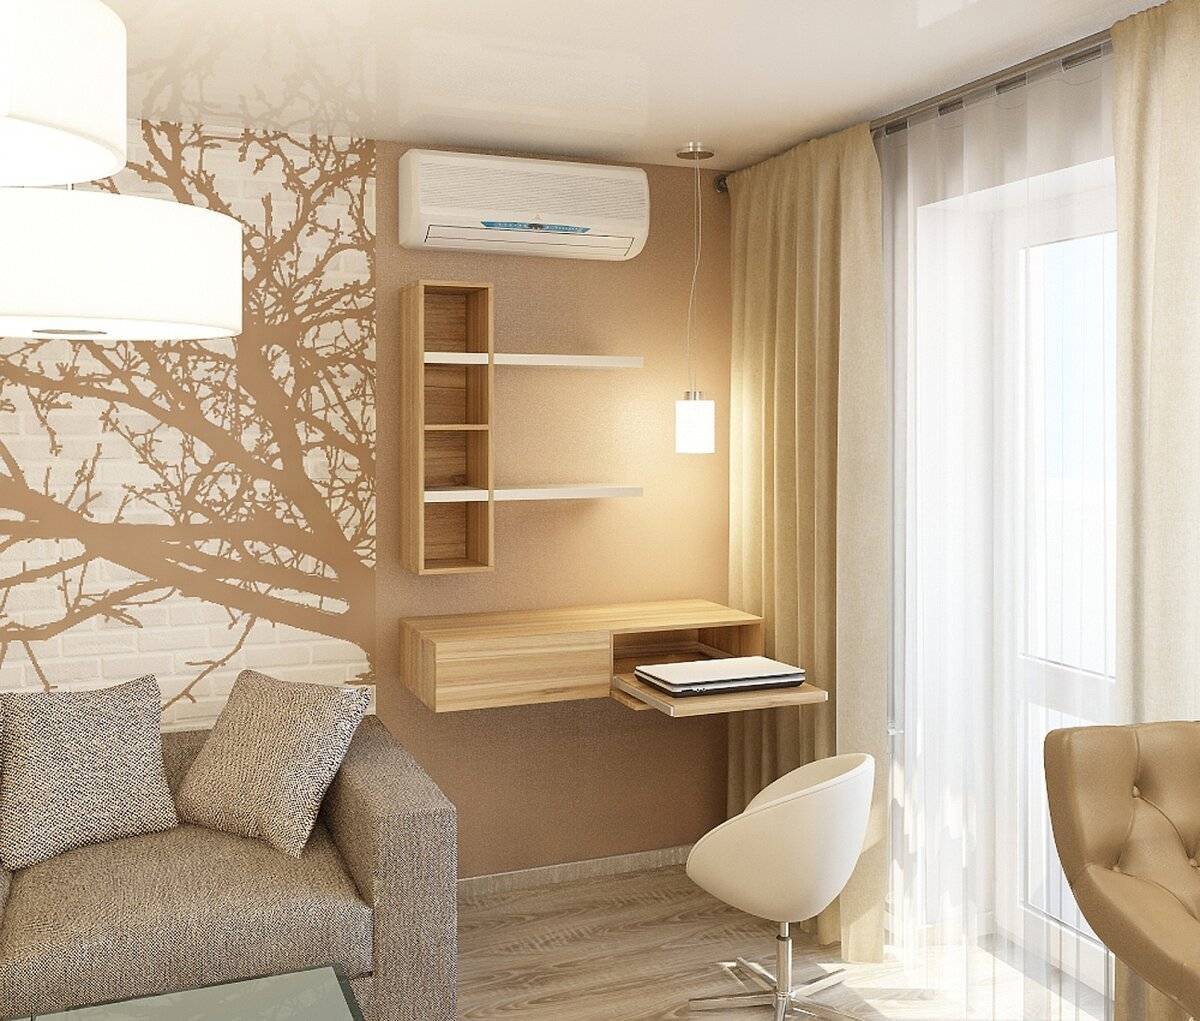 Спальня и гостиная в одной комнате 2022-2023: фото 100+ лучших идей, варианты зонирования